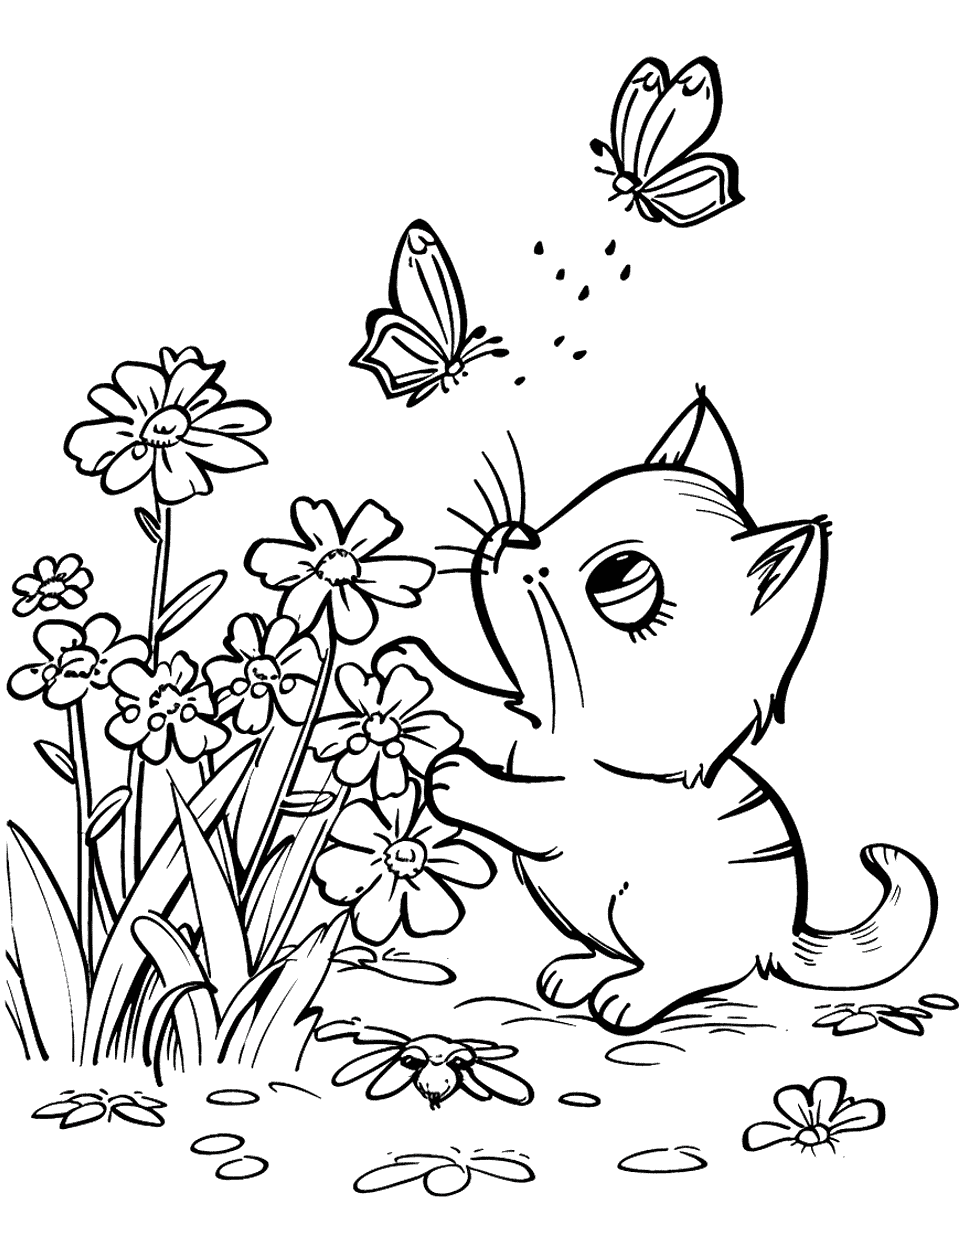 Kitten Chasing Butterflies Garden Coloring Page - A playful kitten trying to catch butterflies near a flower bed.